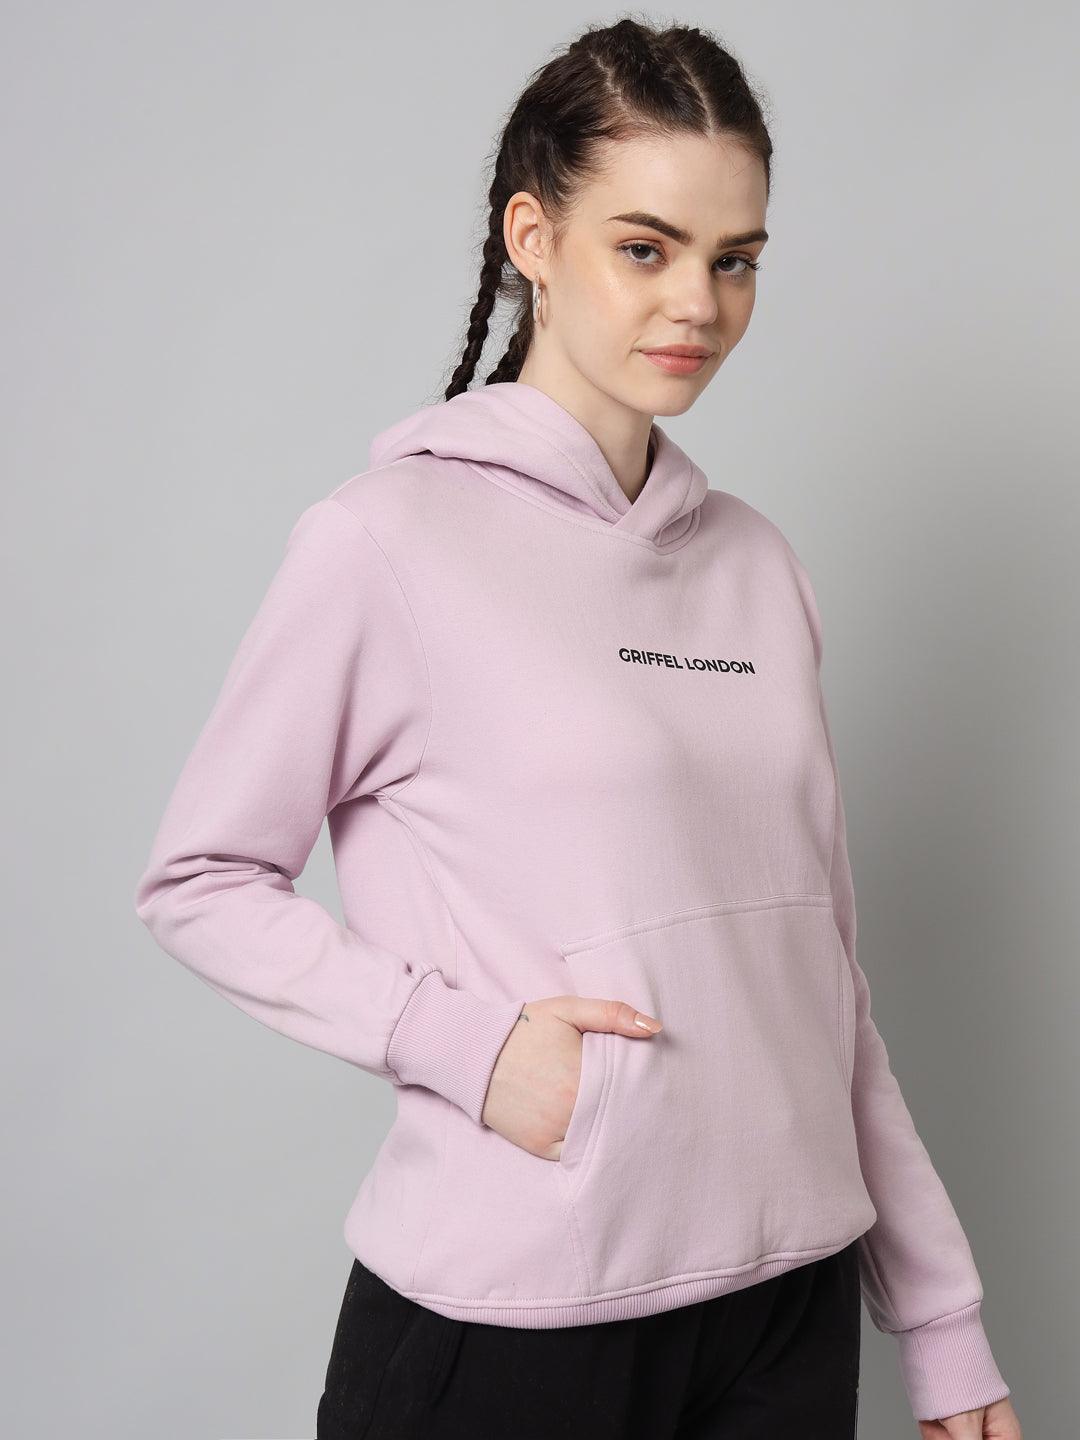 Griffel Women’s Cotton Fleece Full Sleeve Light Purple Hoodie Sweatshirt - griffel